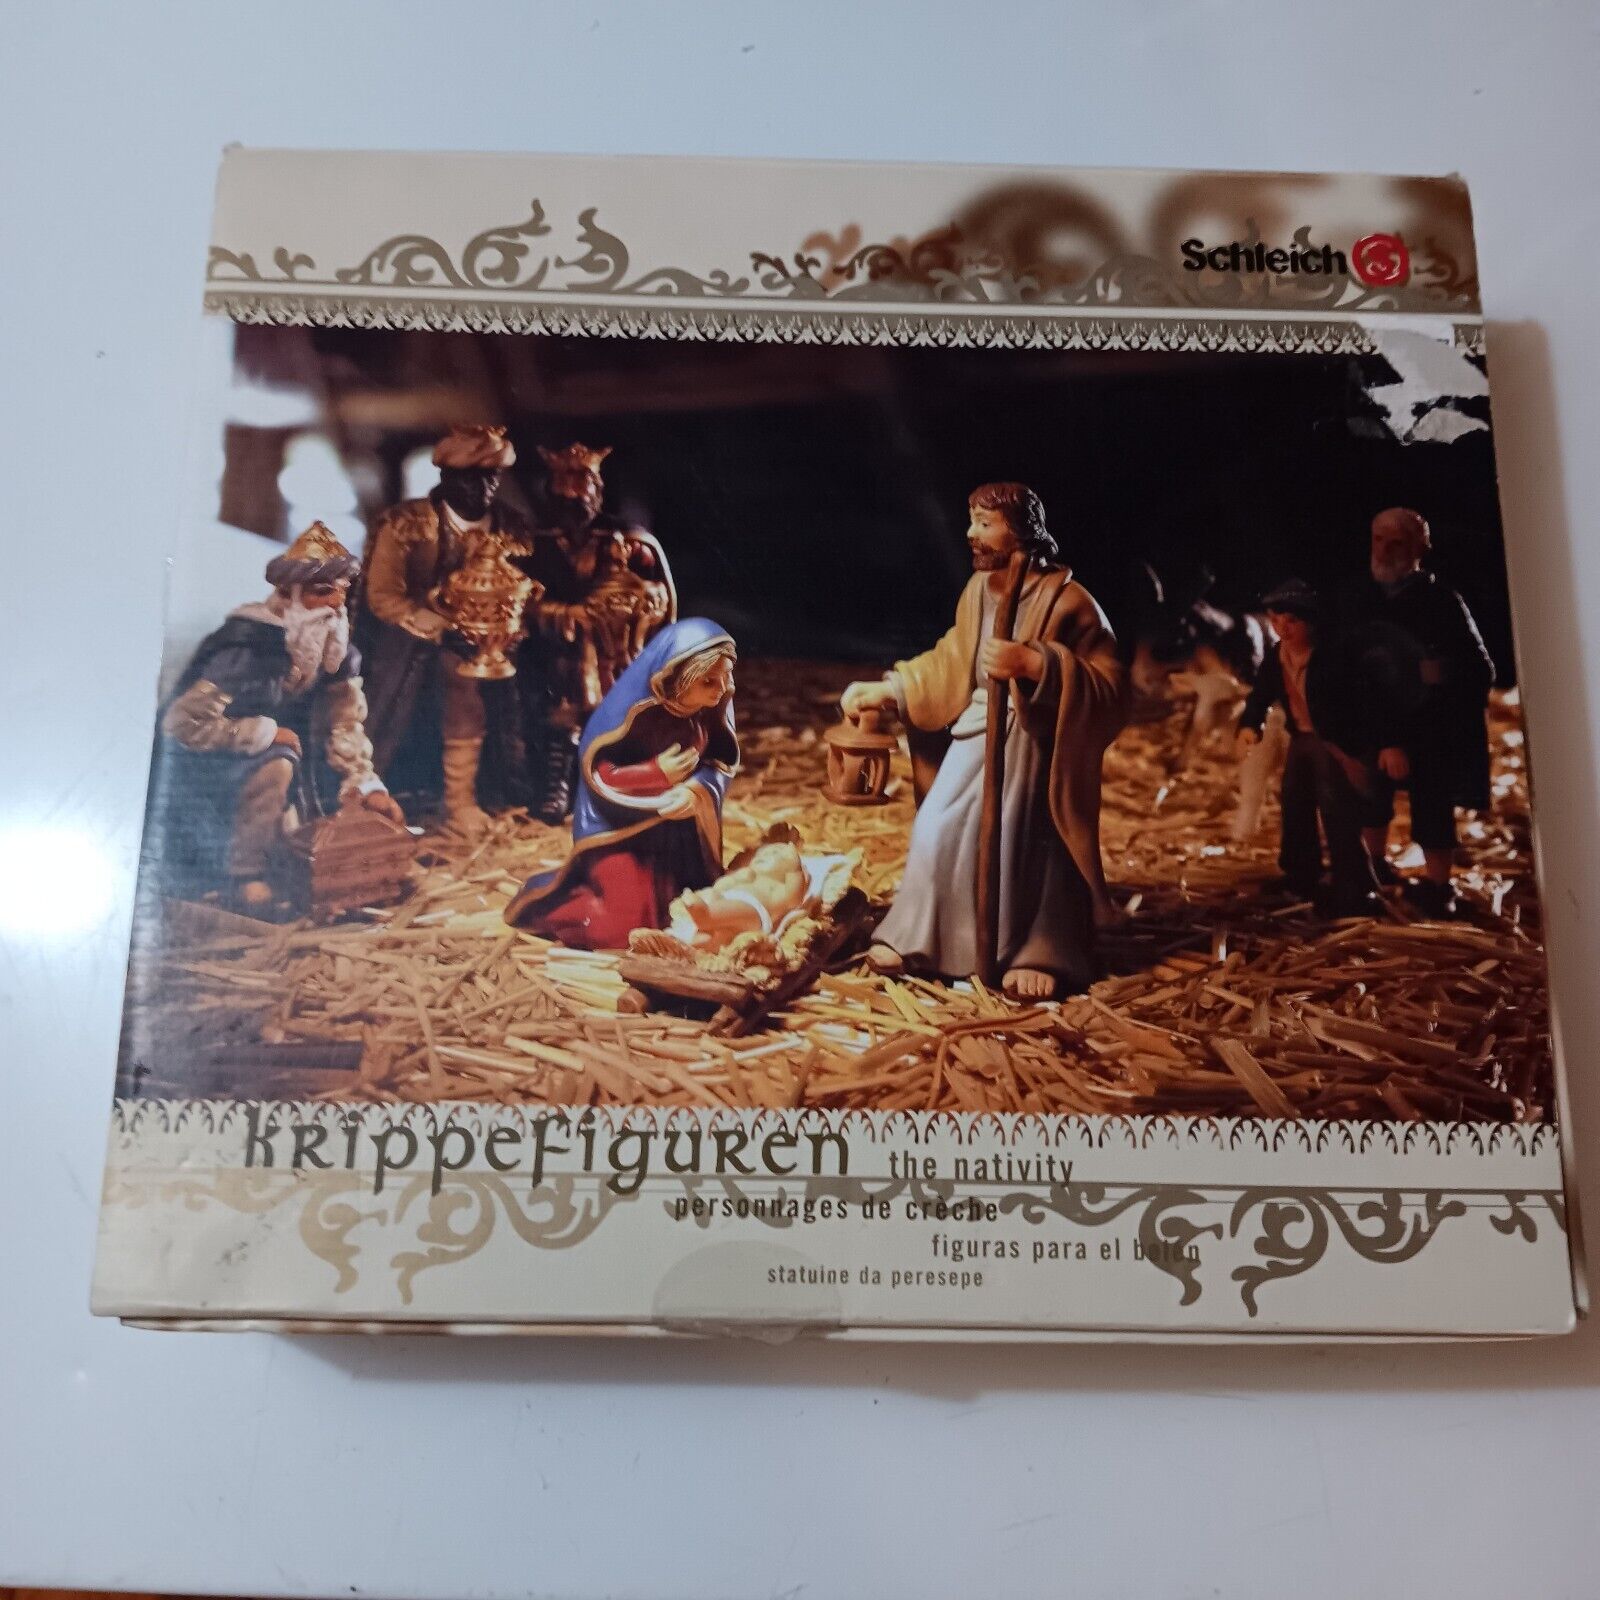 Schleich Krippefiguren 9 Piece Nativity Figurines/Figures Set In Box - Germany